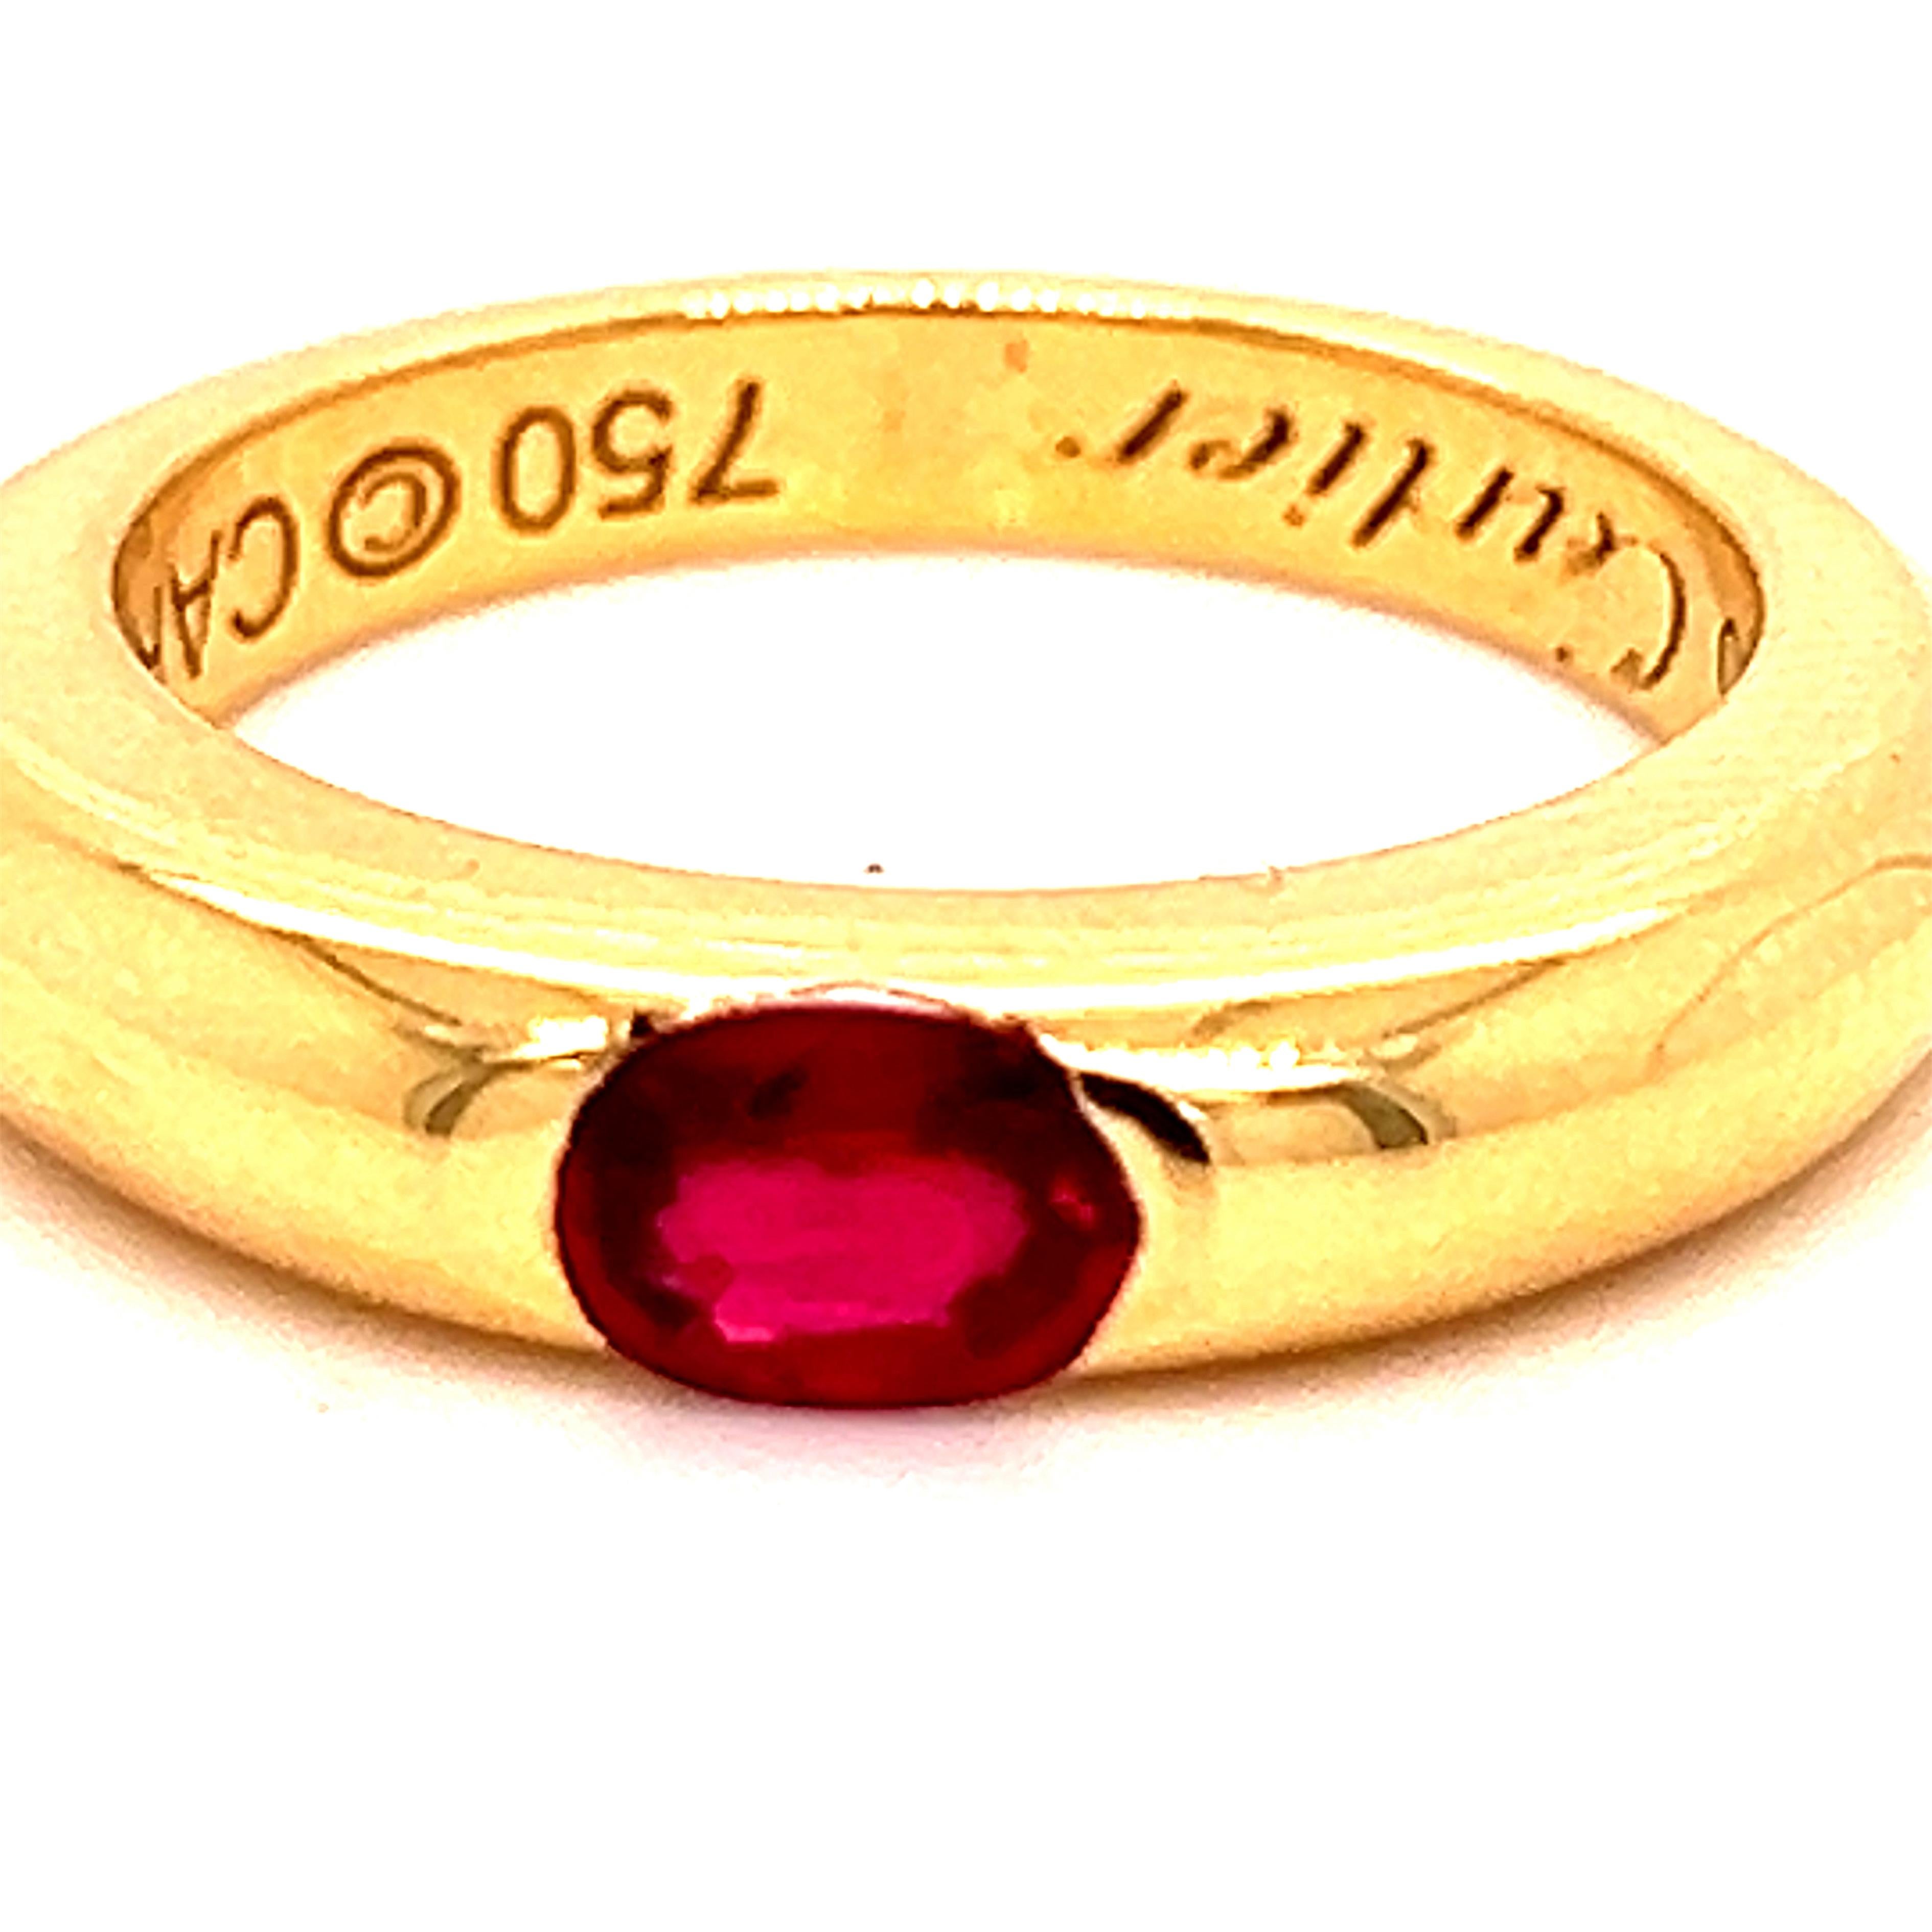 Original 1992, Cartier Oval Red Ruby 18Kt Yellow Gold iconic Ellipse ring, French size 52, Us Size 6.
Un très précieux Rubis Rouge Ovale de 0.60KT de qualité supérieure dans une bague en or jaune 18kt simple et facile à porter. 
D'une grâce et d'une